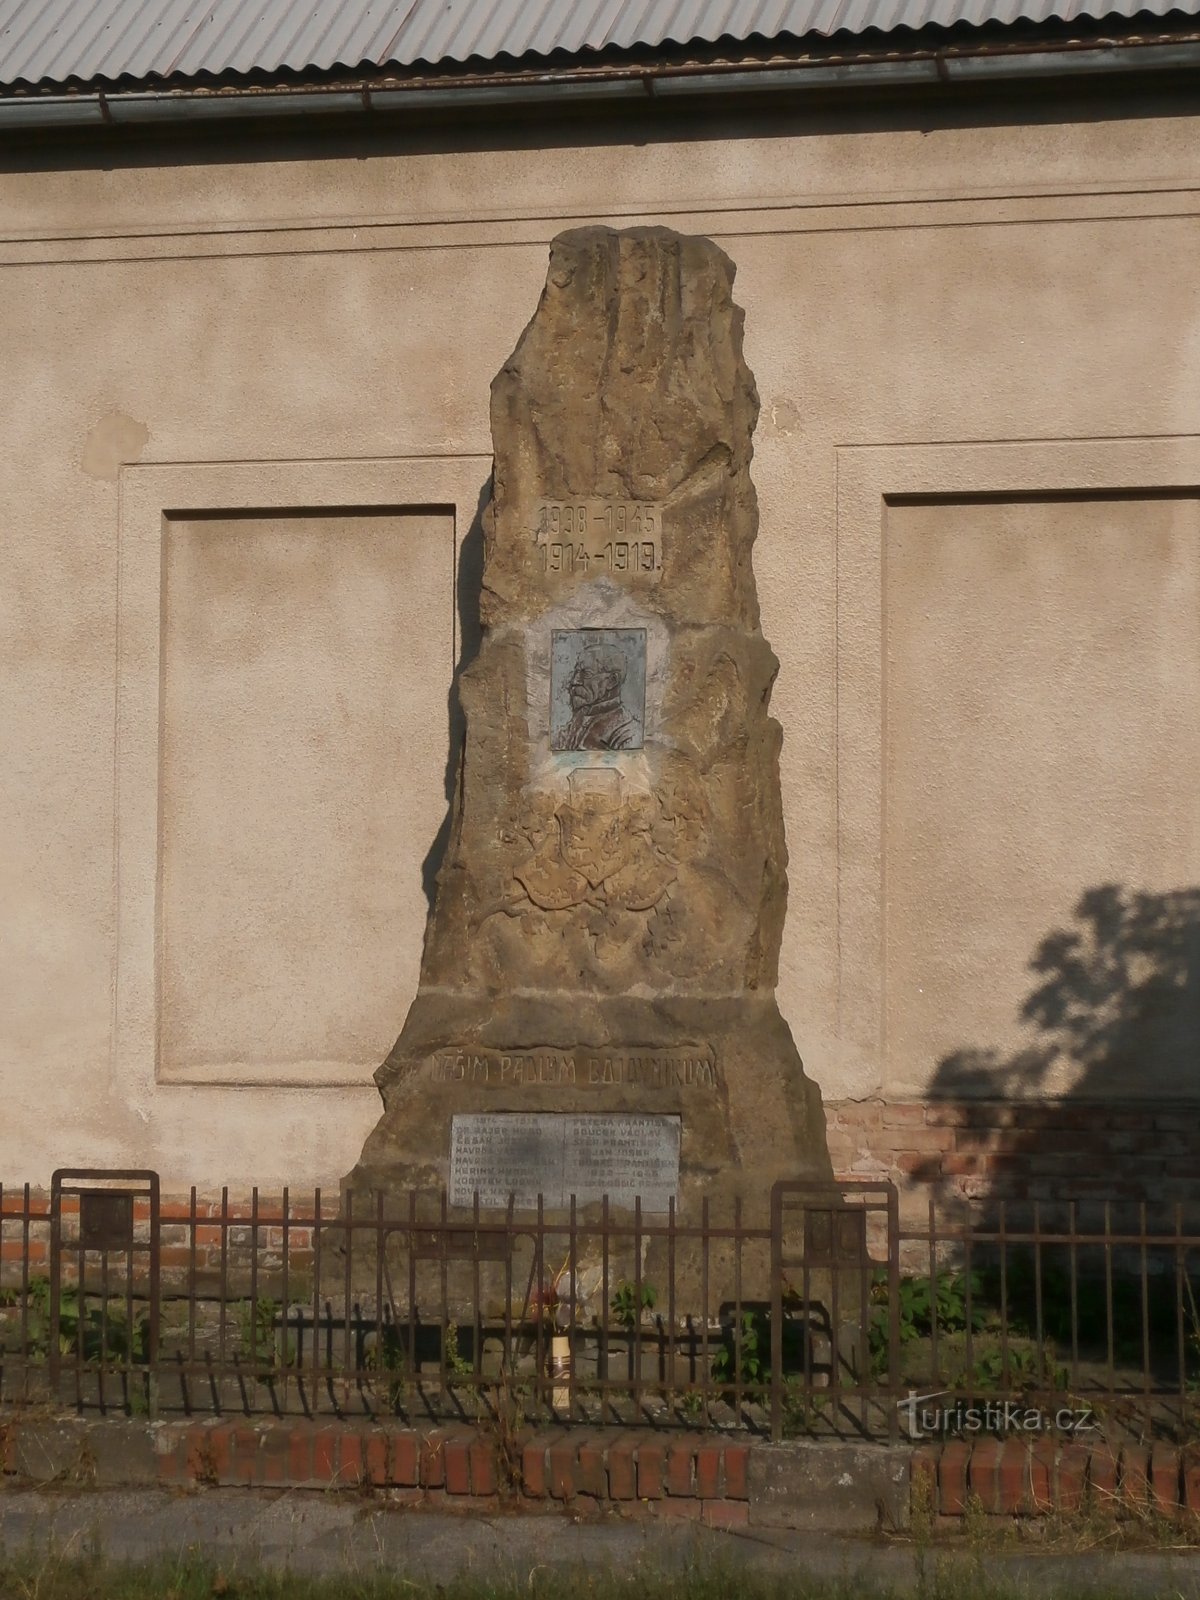 Monument voor degenen die zijn omgekomen in de Eerste Wereldoorlog (Třebeš)